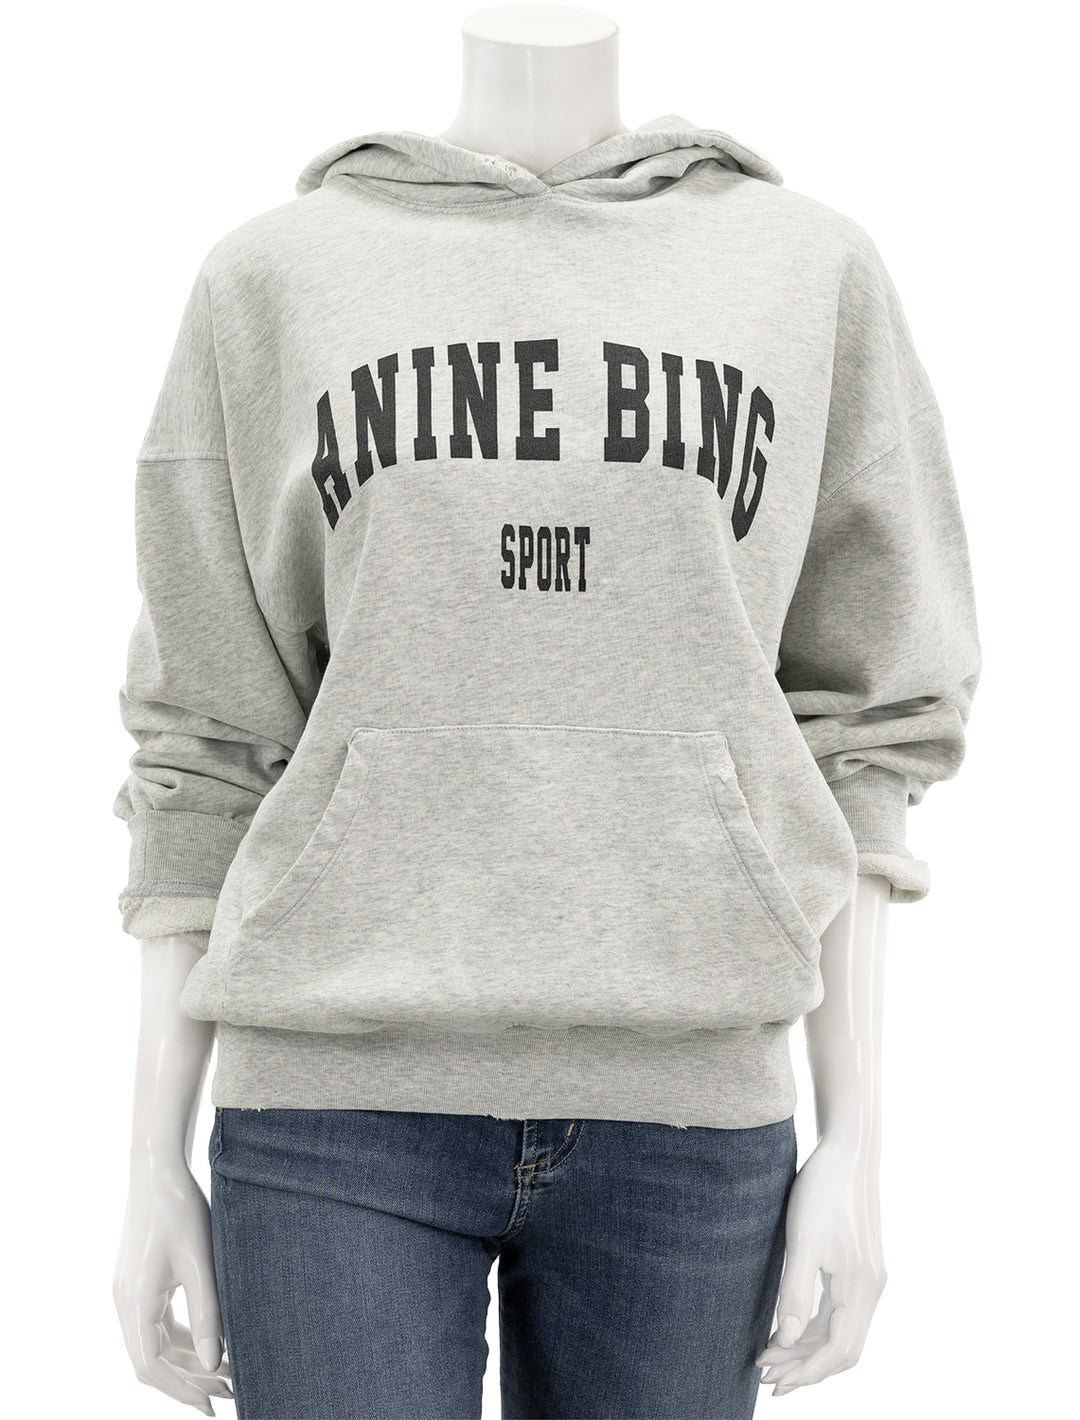 Front view of Anine Bing's harvey sweatshirt in heather grey.